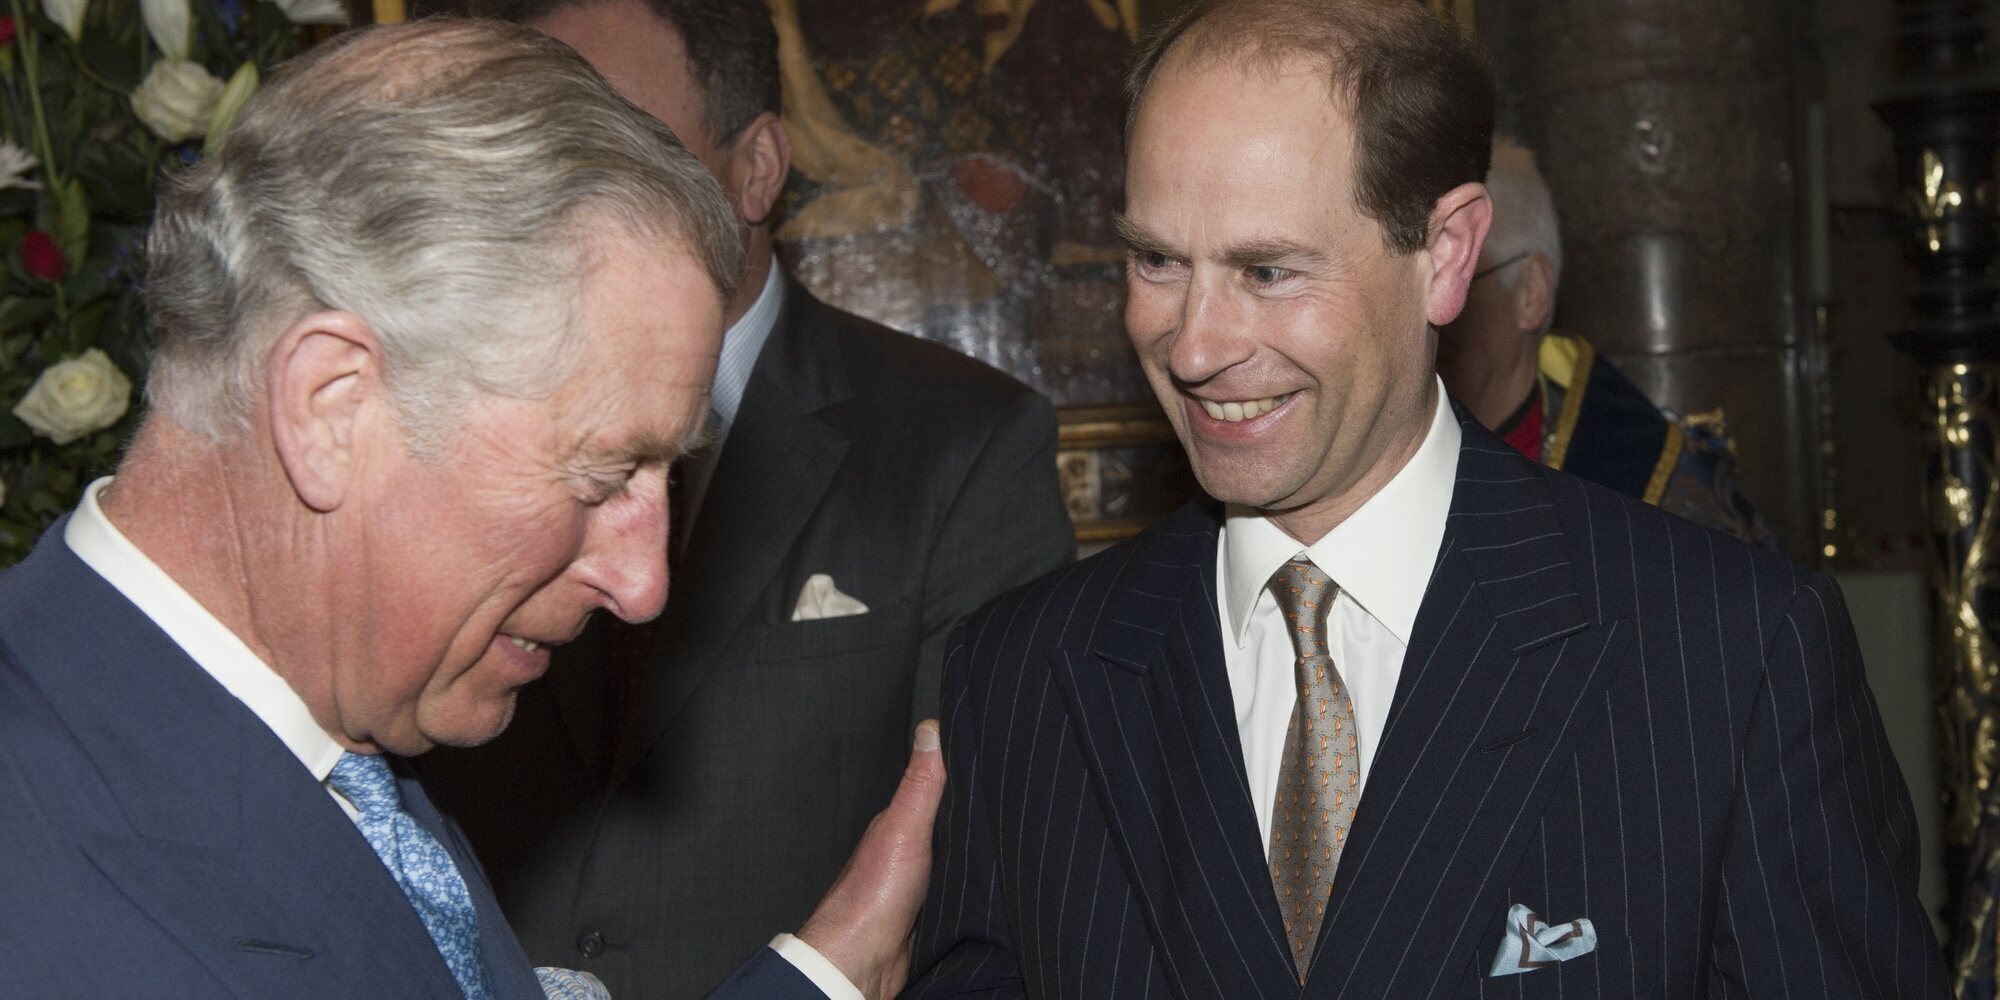 El Príncipe Carlos y el Príncipe Eduardo, enfrentados por el título de Duque de Edimburgo